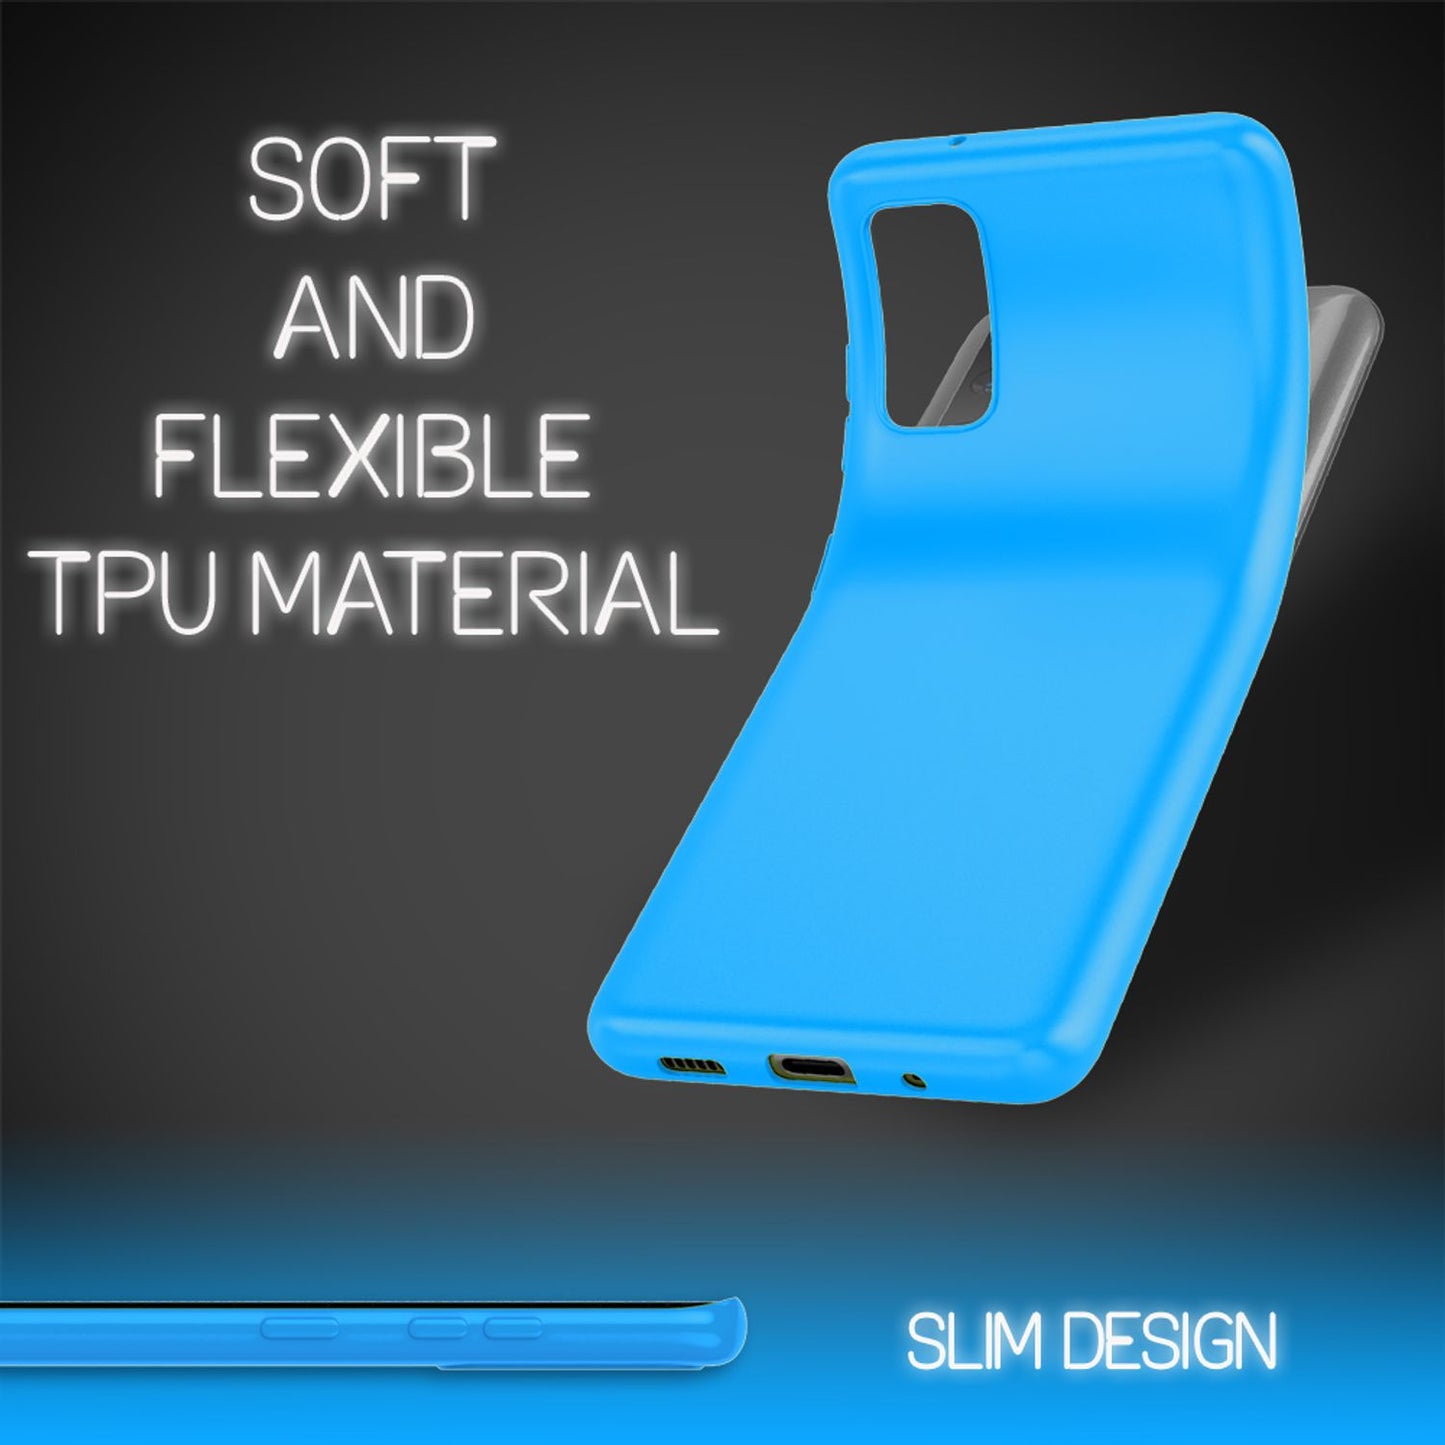 NALIA Neon Hülle für Samsung Galaxy S20 FE, Slim Handy Case Schutz Tasche Cover